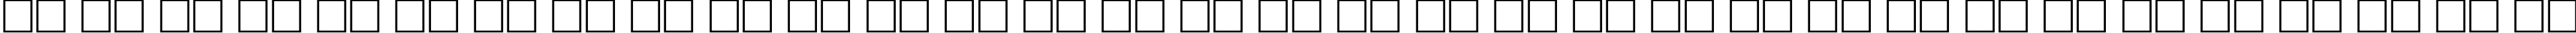 Пример написания русского алфавита шрифтом HighWayC